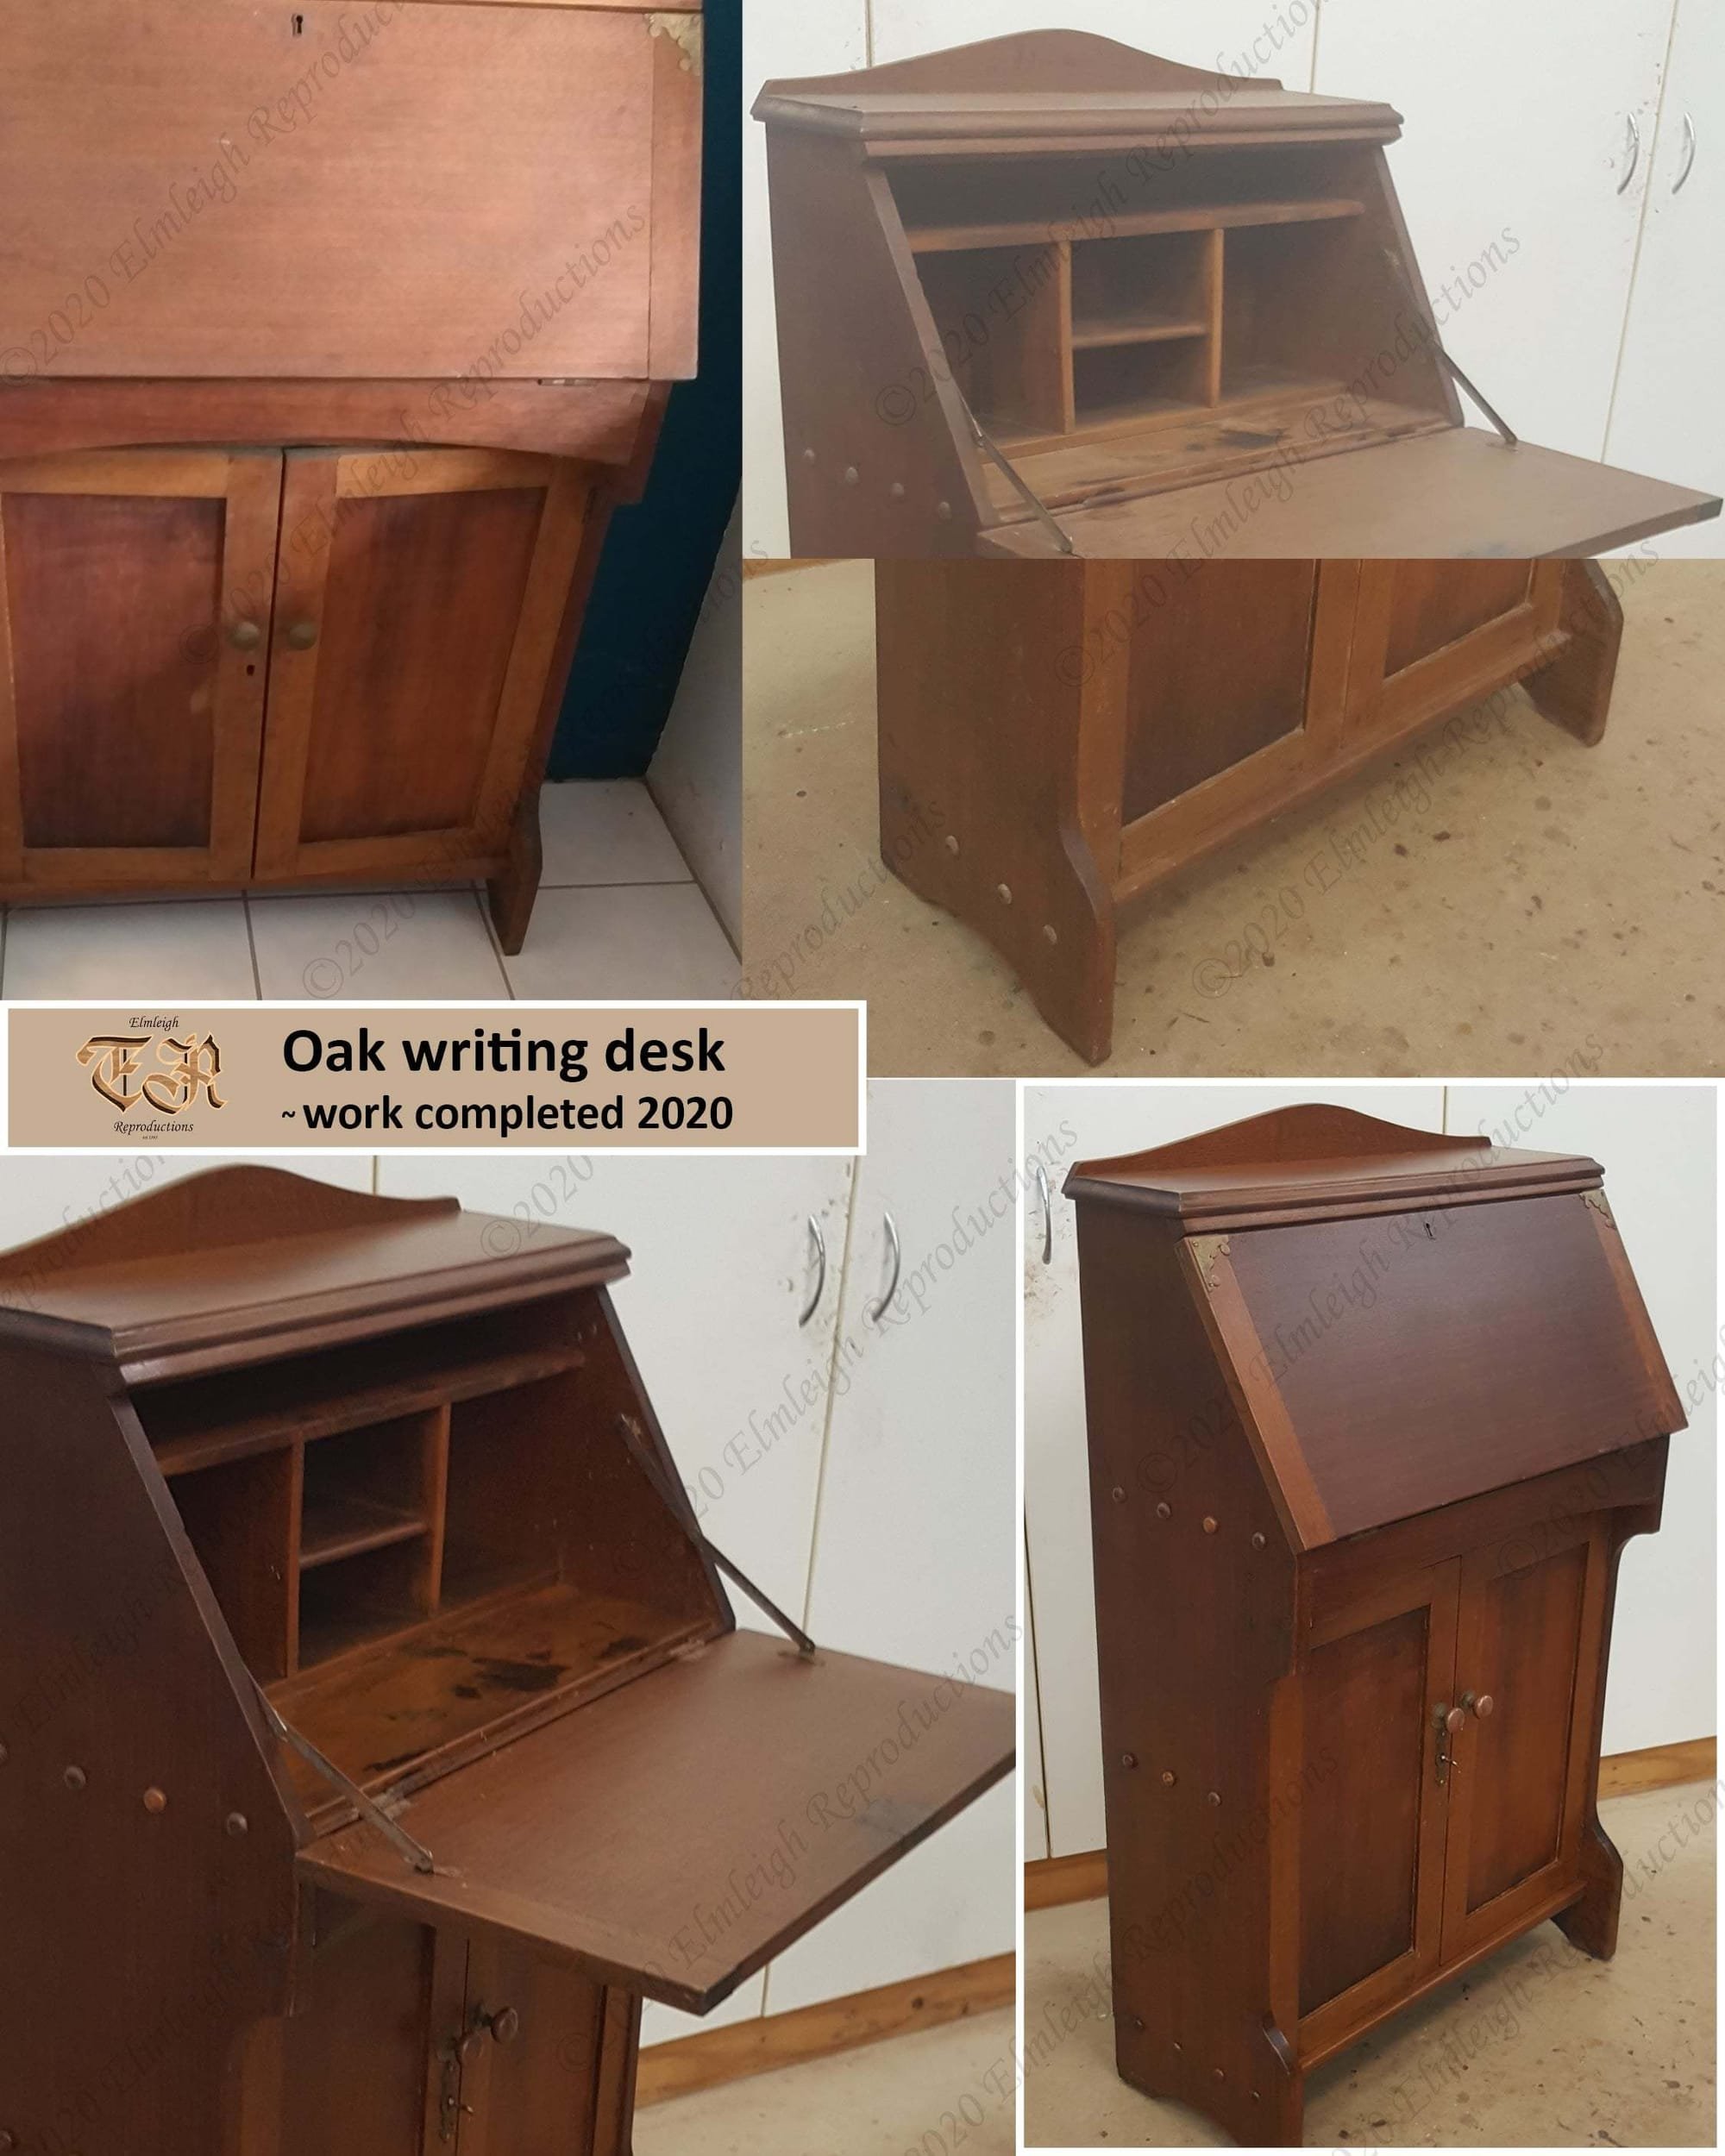 Oak writing desk